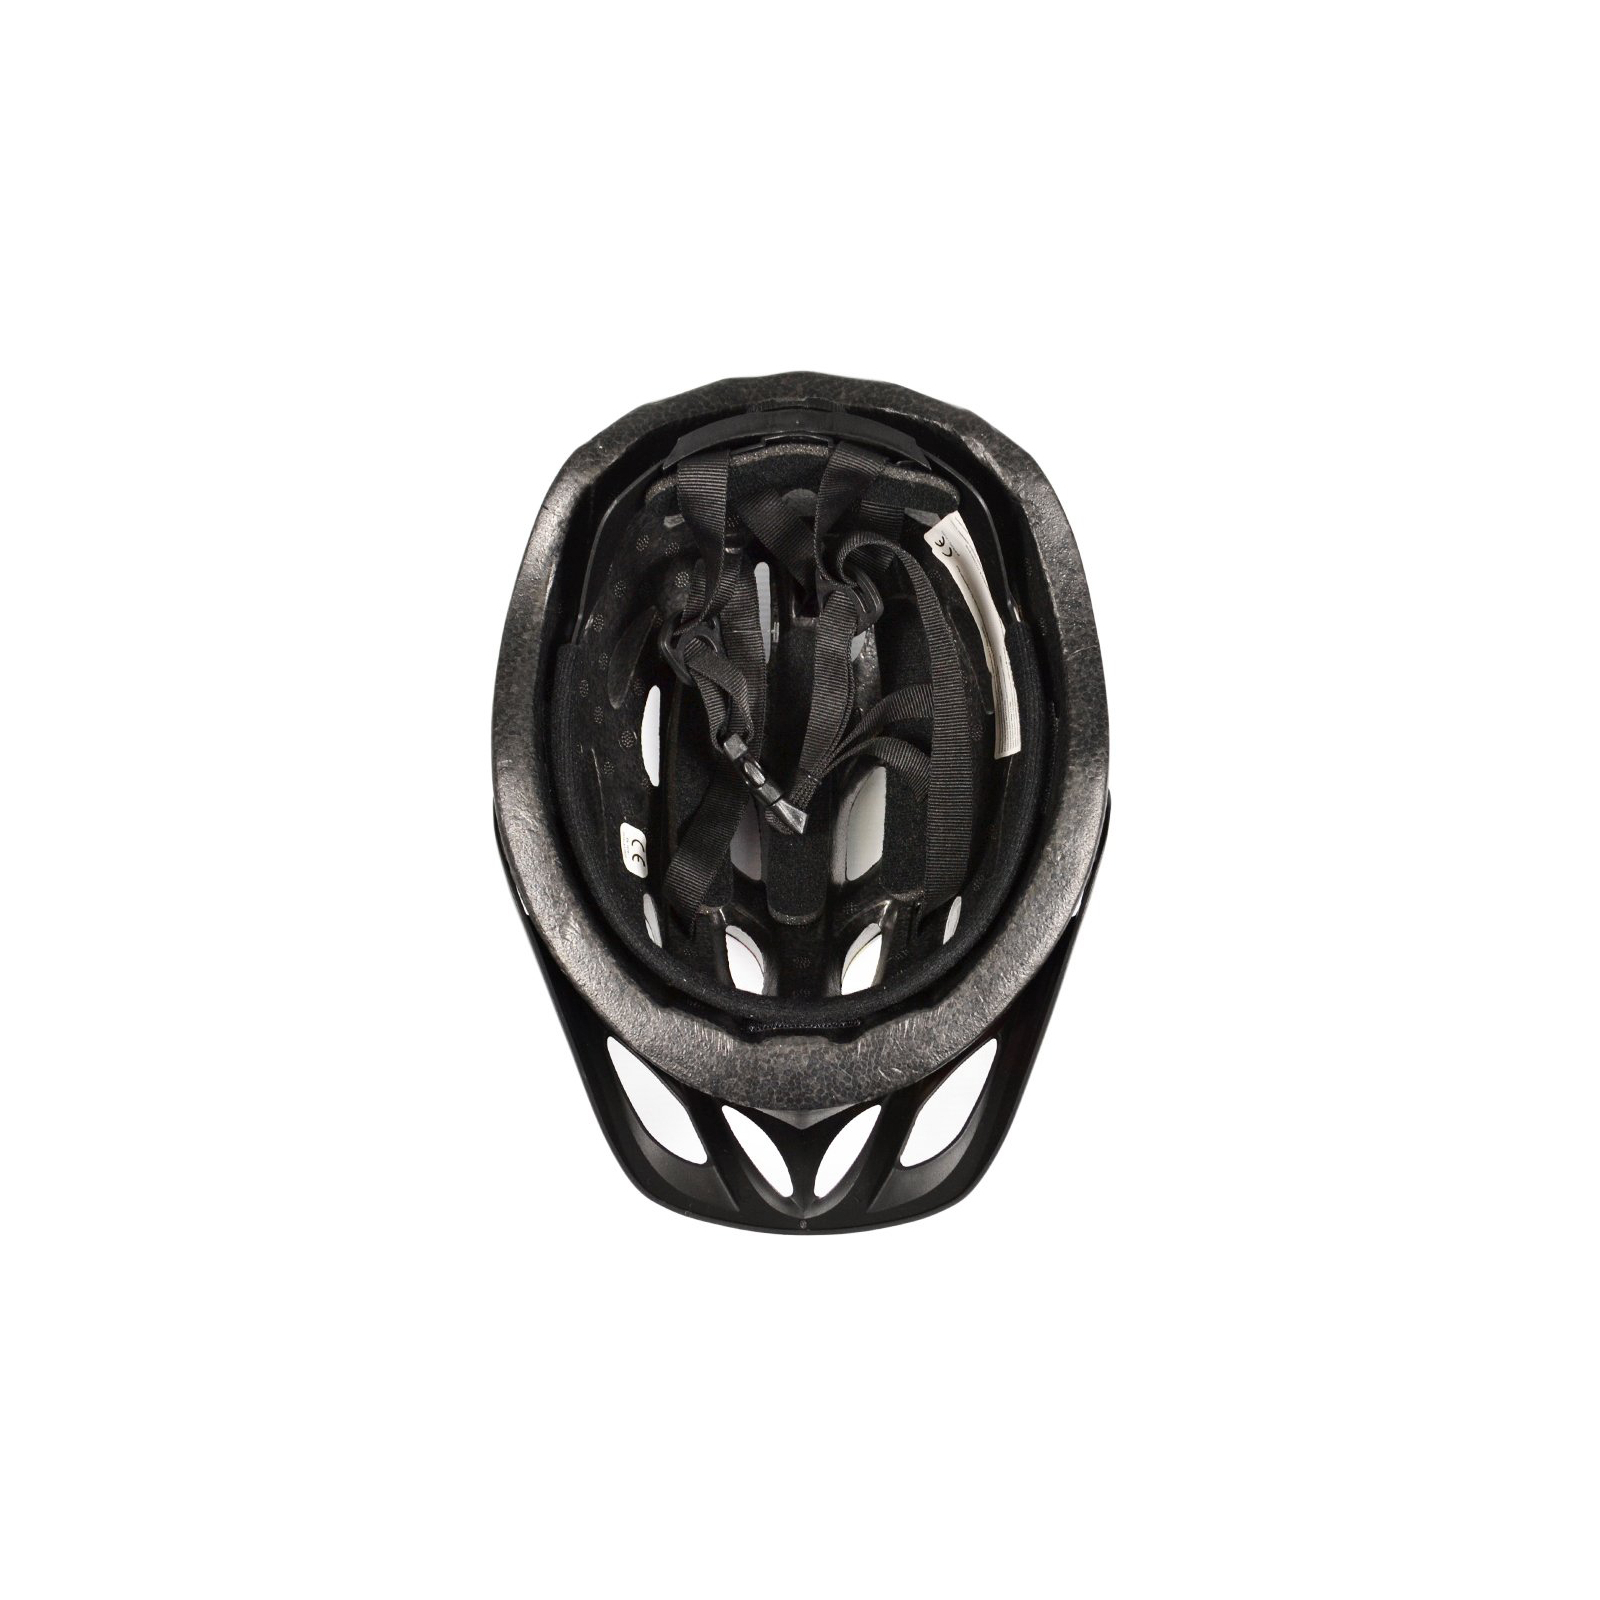 Шлем Good Bike L 58-60 см Black/White (88855/4-IS) изображение 5